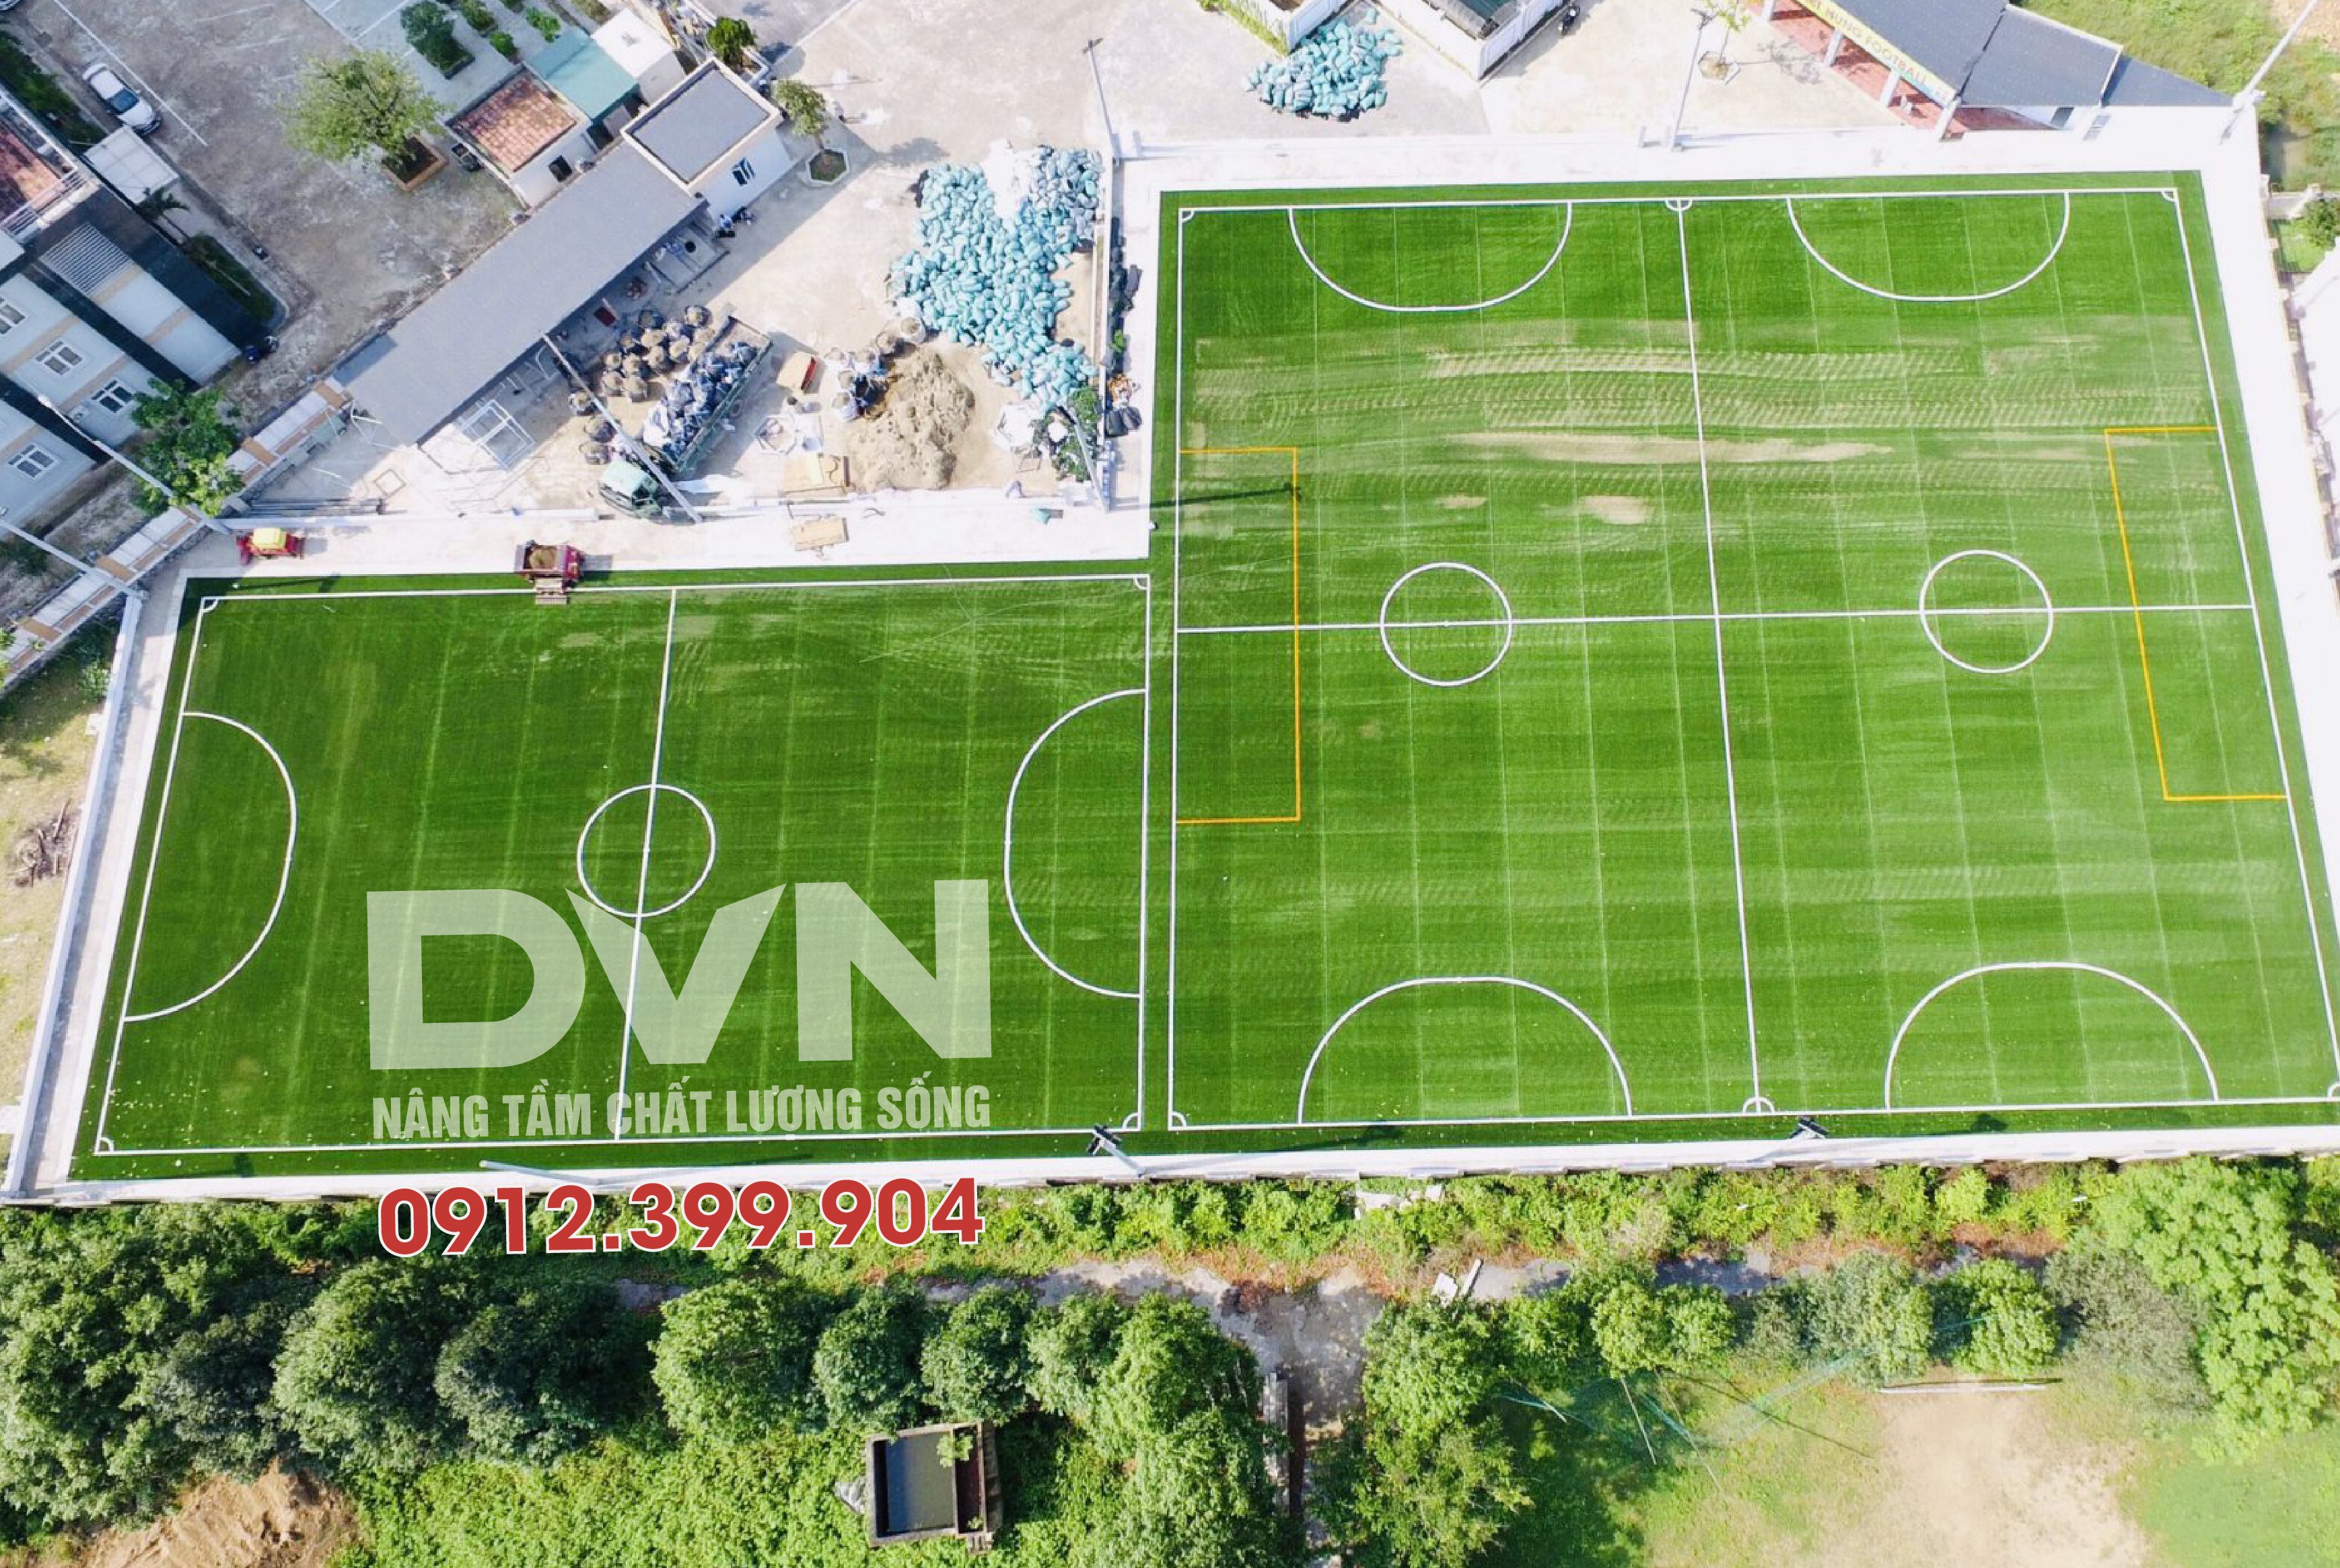 Quy trình thi công sân bóng đá mini cỏ nhân tạo thiết kế và hoàn thiện sân  bóng chuyên nghiệp